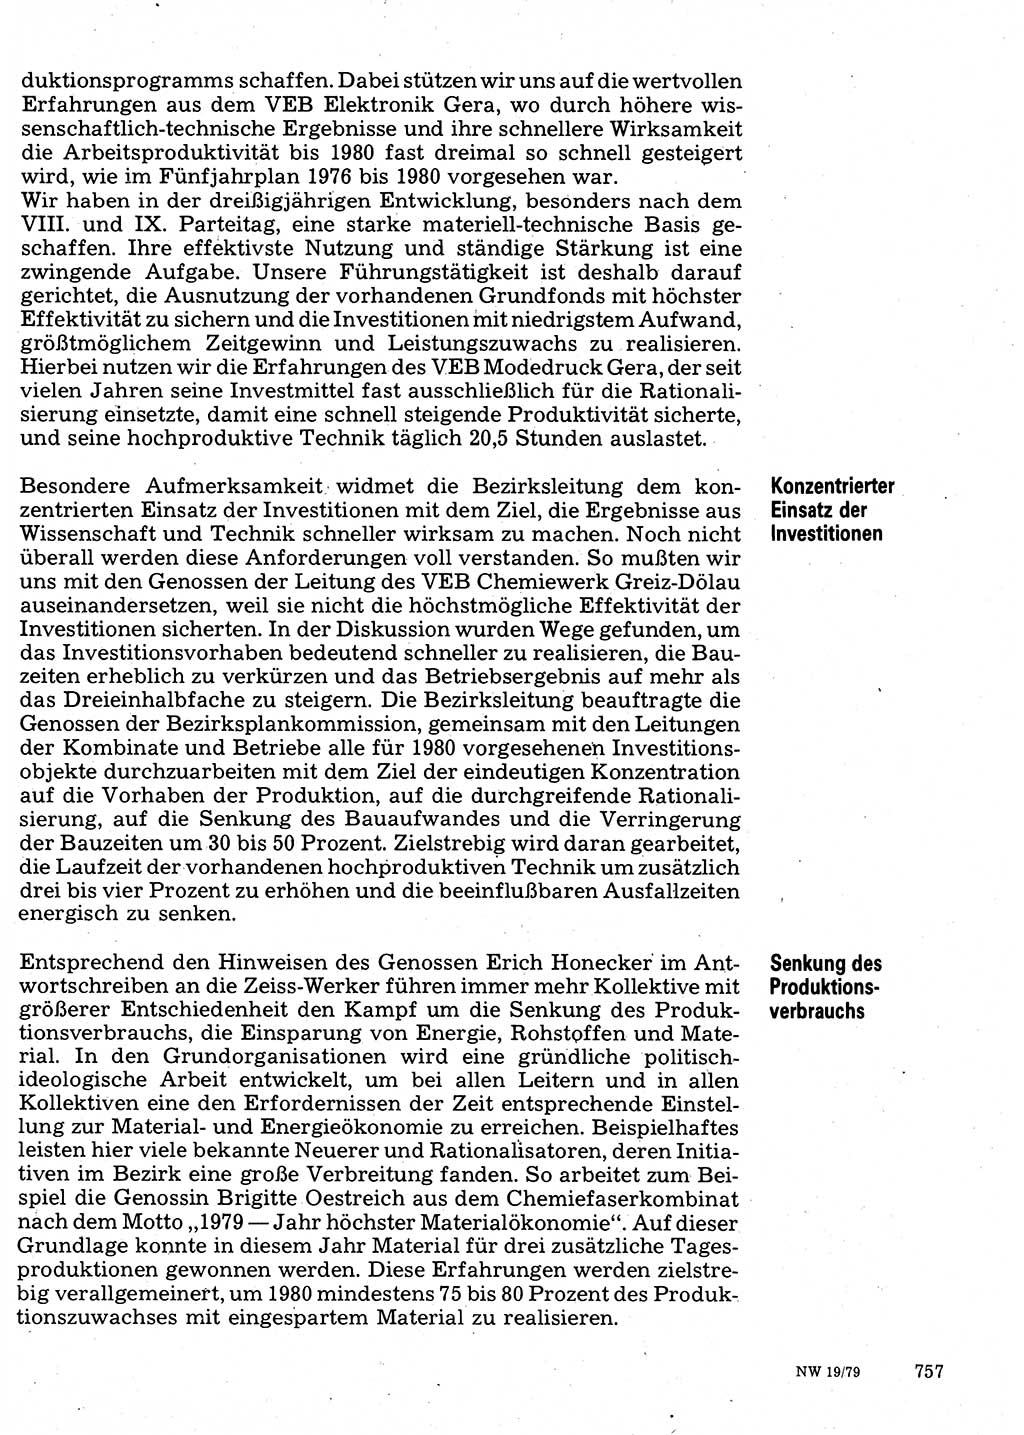 Neuer Weg (NW), Organ des Zentralkomitees (ZK) der SED (Sozialistische Einheitspartei Deutschlands) für Fragen des Parteilebens, 34. Jahrgang [Deutsche Demokratische Republik (DDR)] 1979, Seite 757 (NW ZK SED DDR 1979, S. 757)